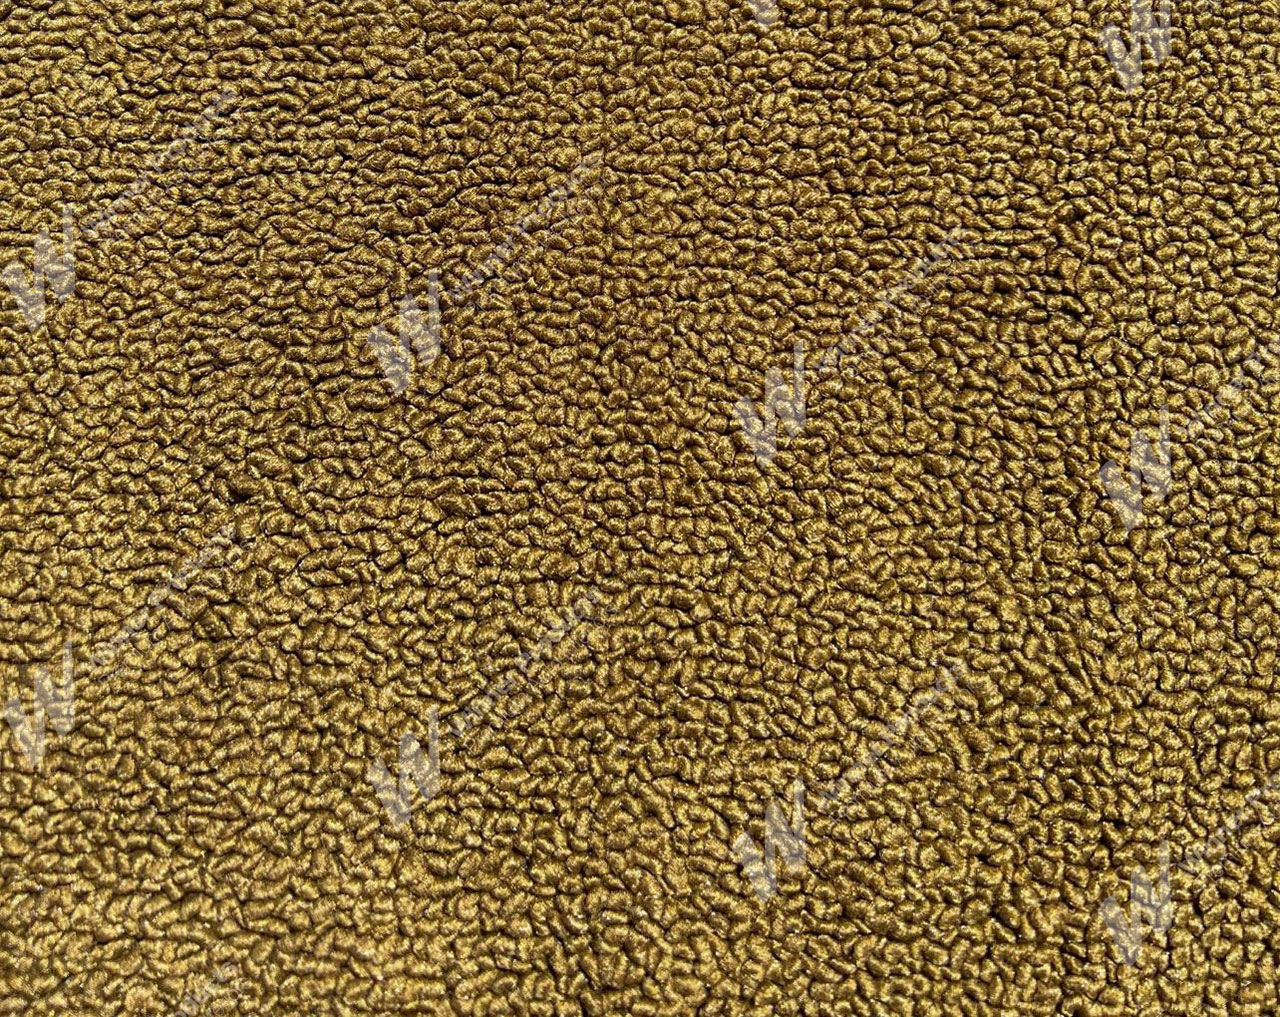 Holden Kingswood HT Kingswood Wagon 11G Antique Gold & Castillion Weave Carpet (Image 1 of 1)